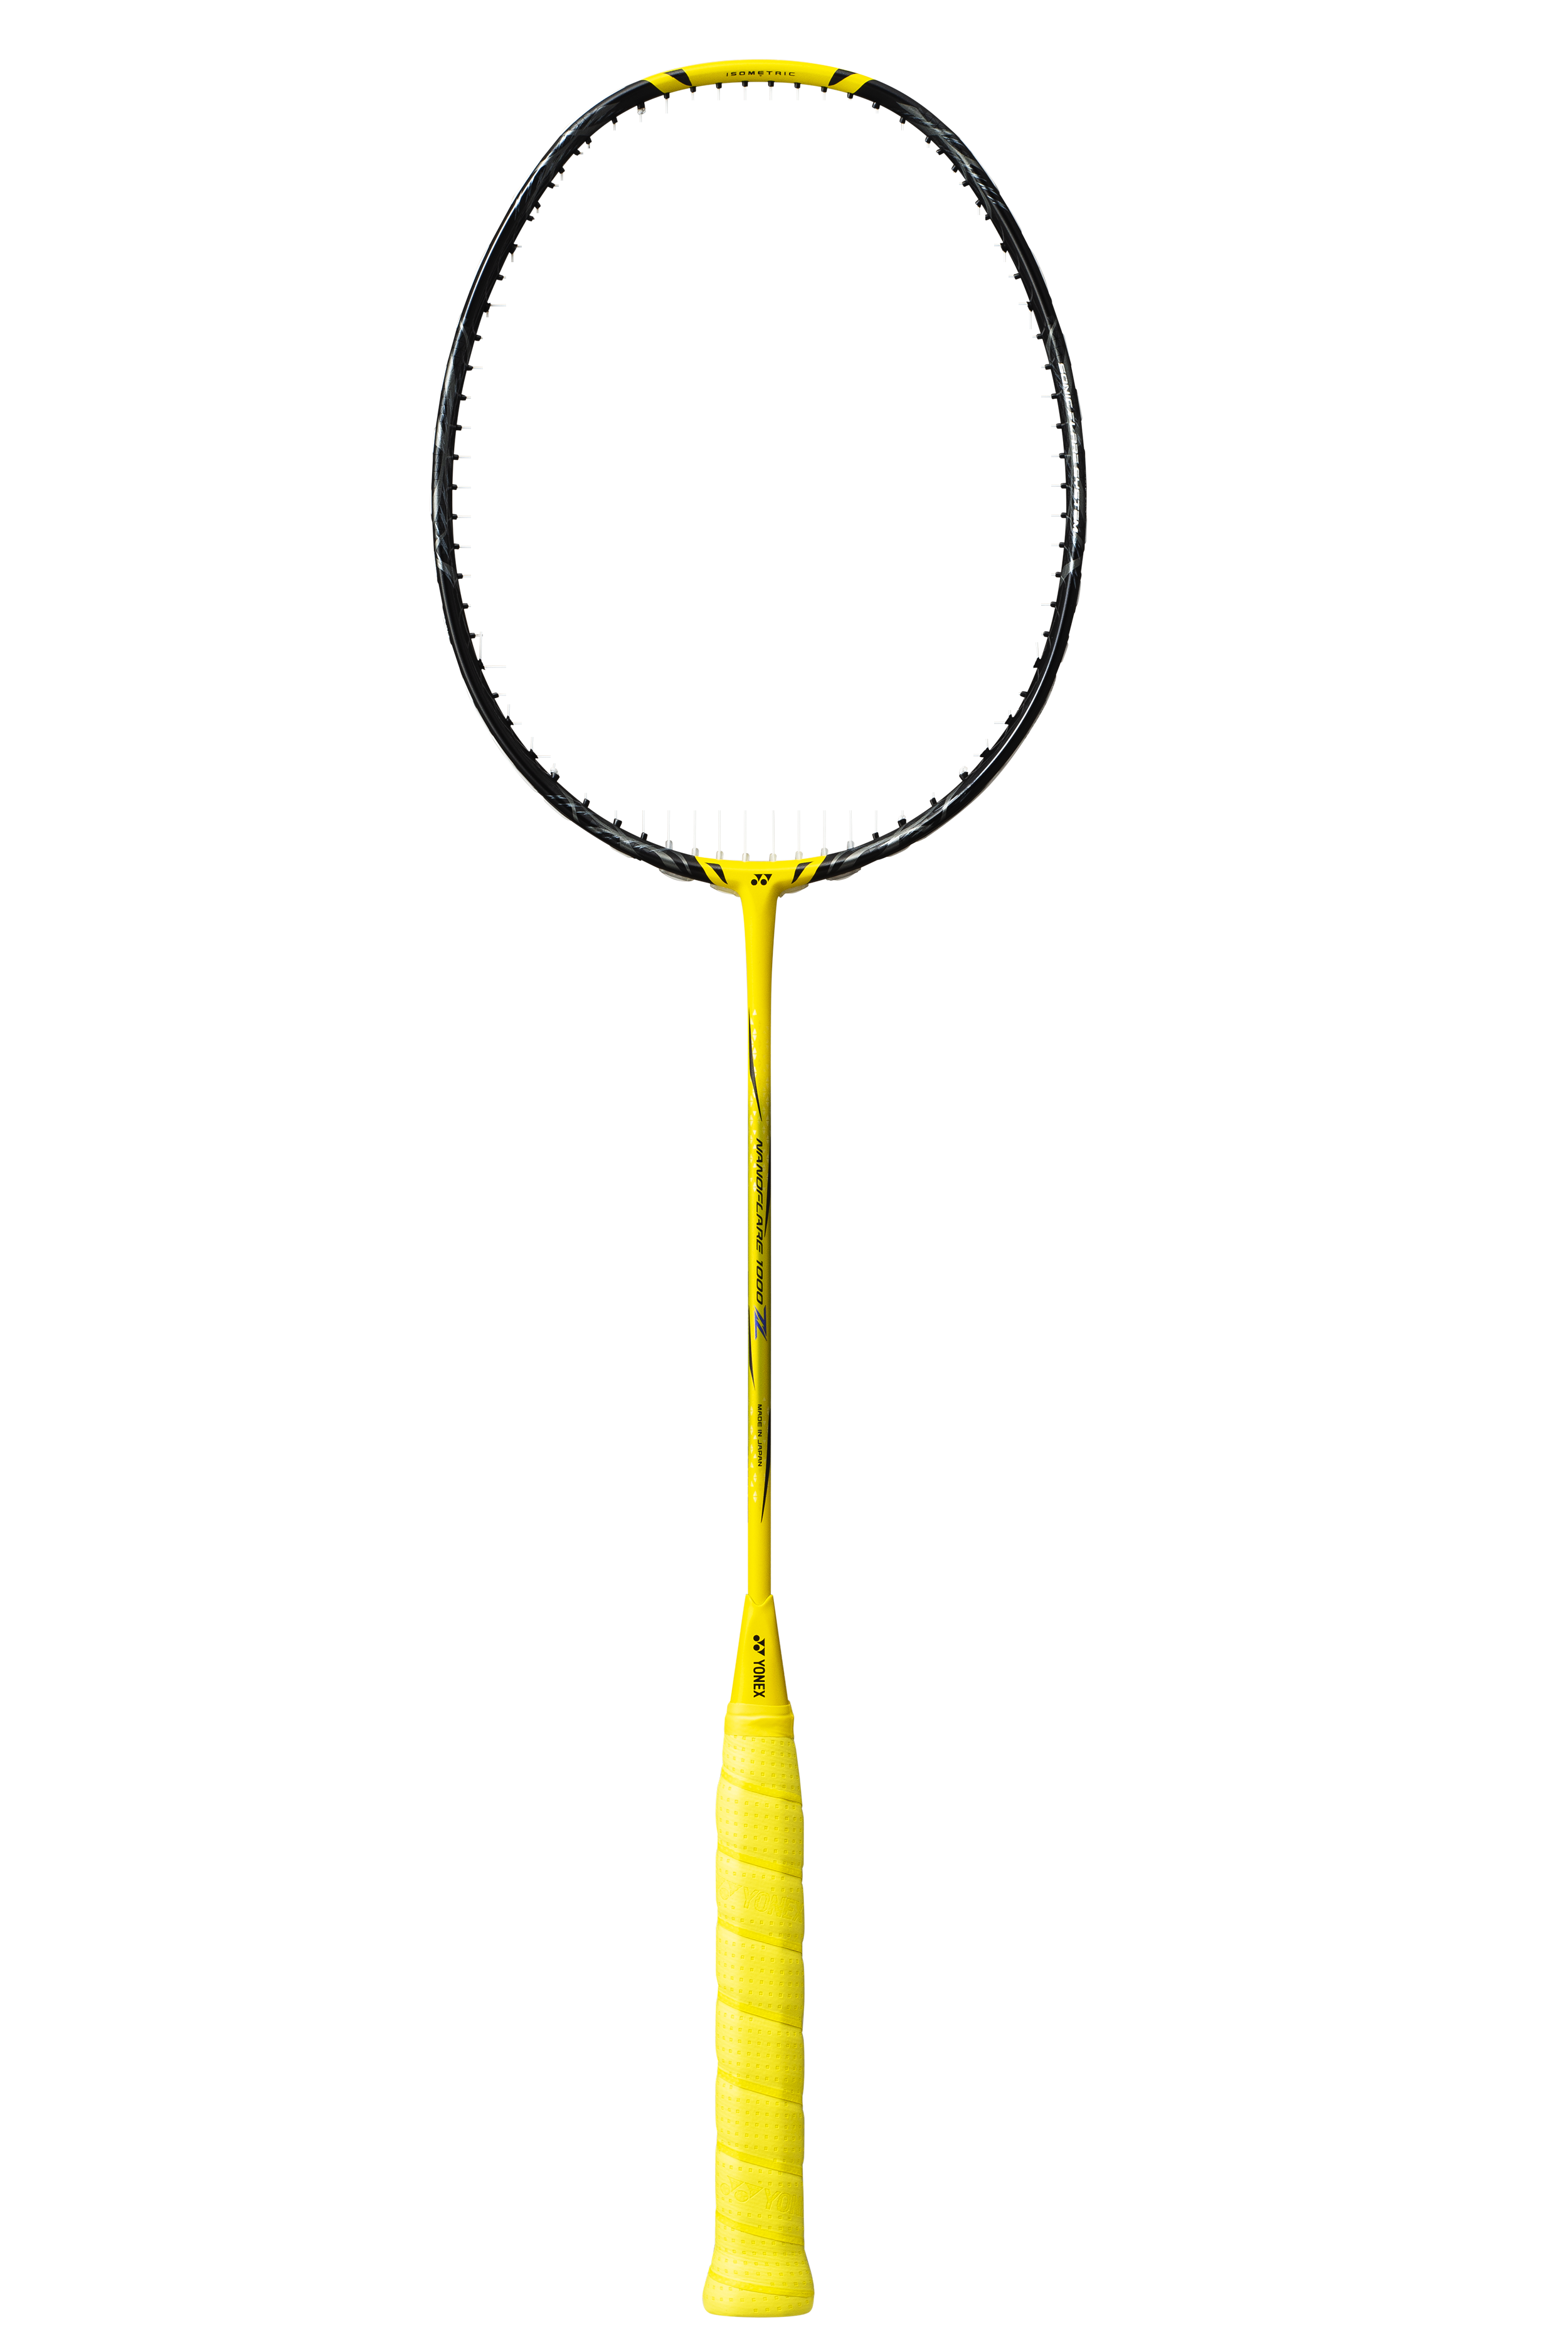 YONEX Nanoflare 1000Z Badminton Racquet - Lightning Yellow